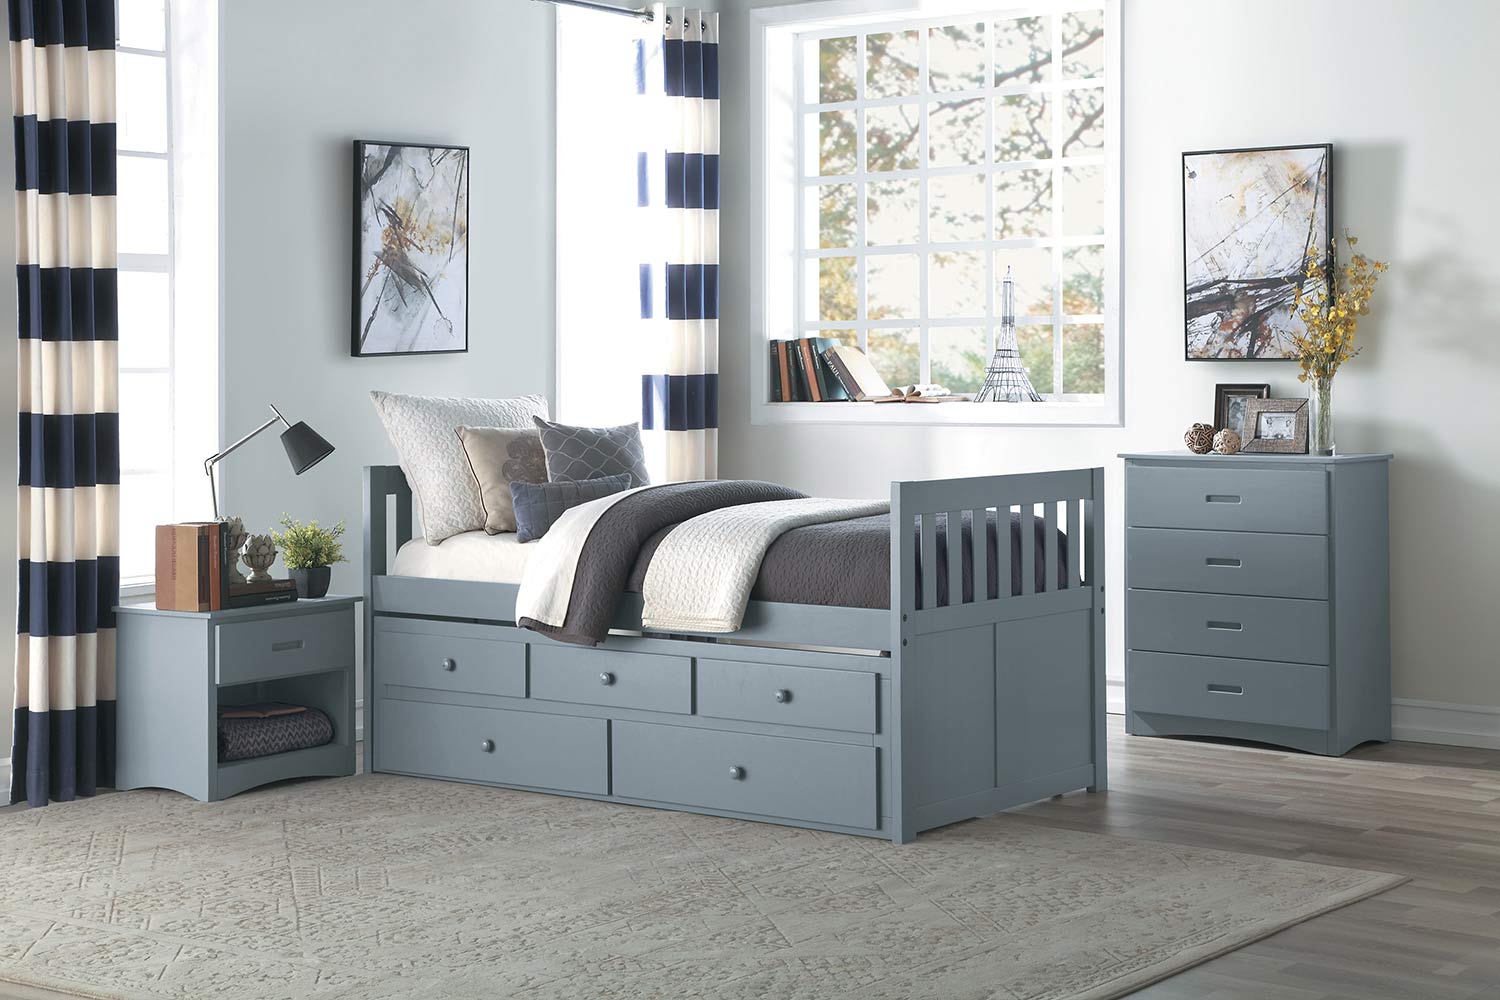 Homelegance Orion Trundle Bedroom Set - Gray